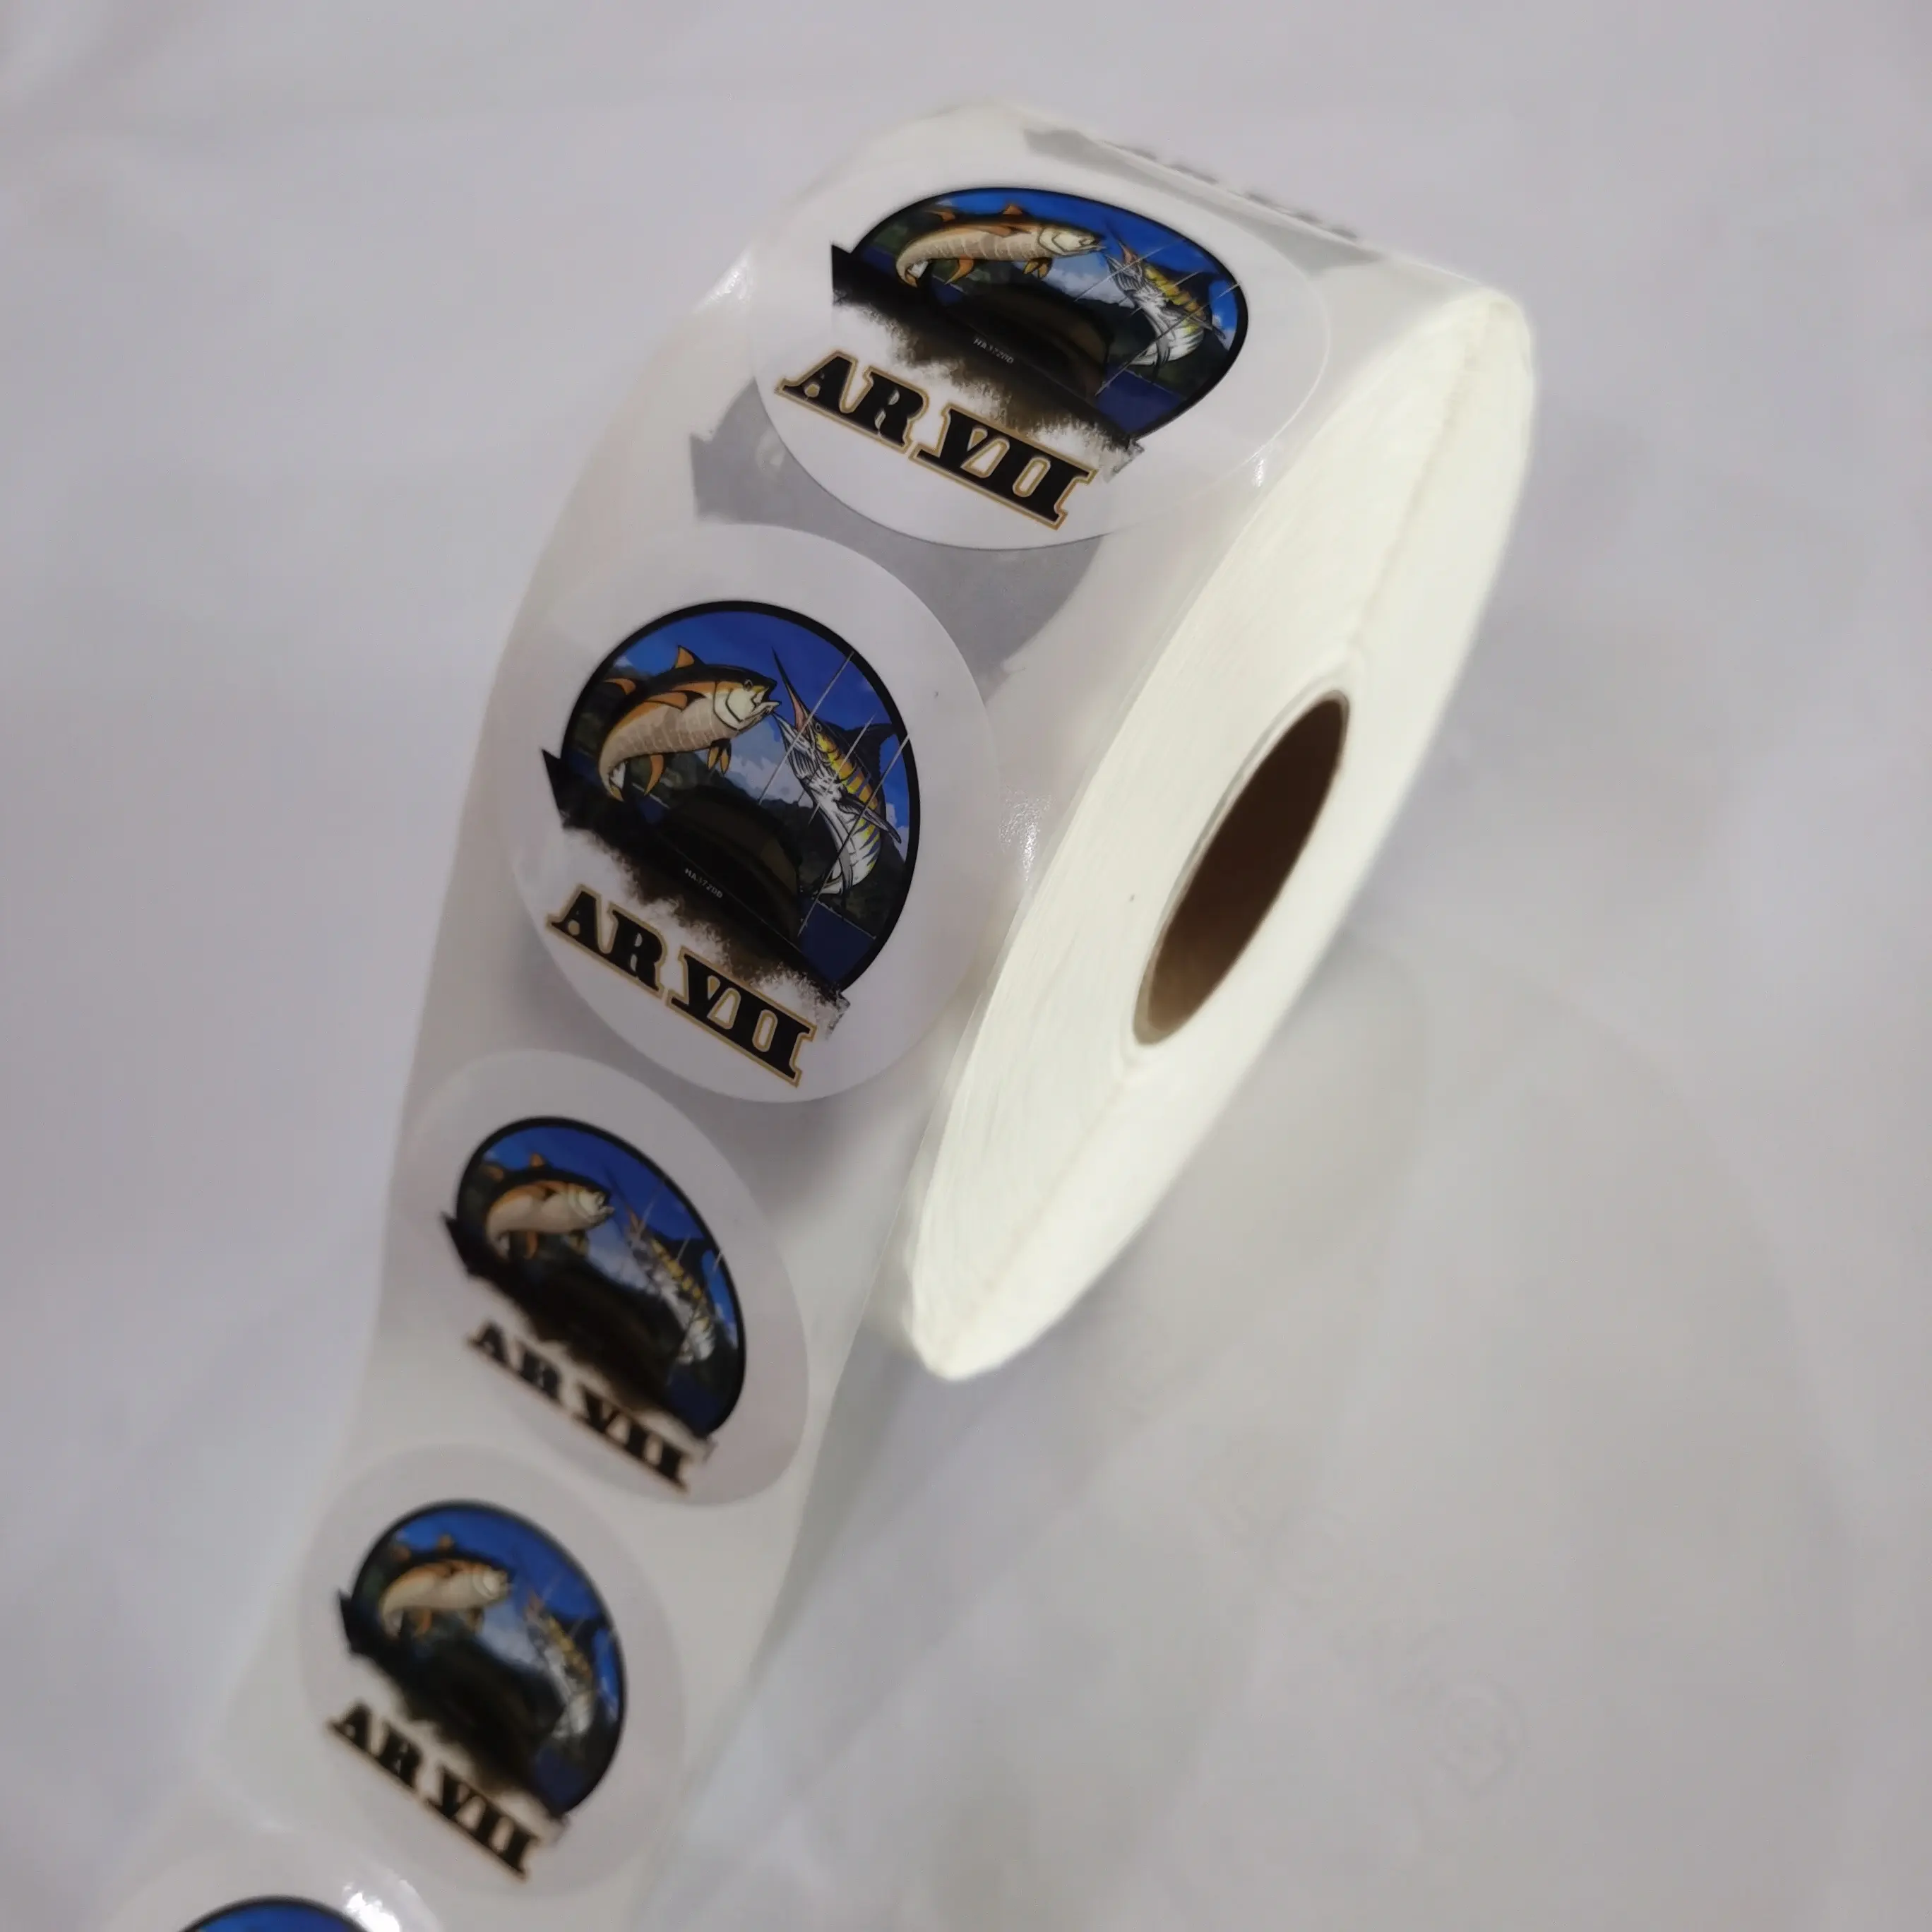 Etiqueta adesiva à prova d'água barata personalizada de alta qualidade para impressão de etiquetas de vinil com logotipo cortado para negócios